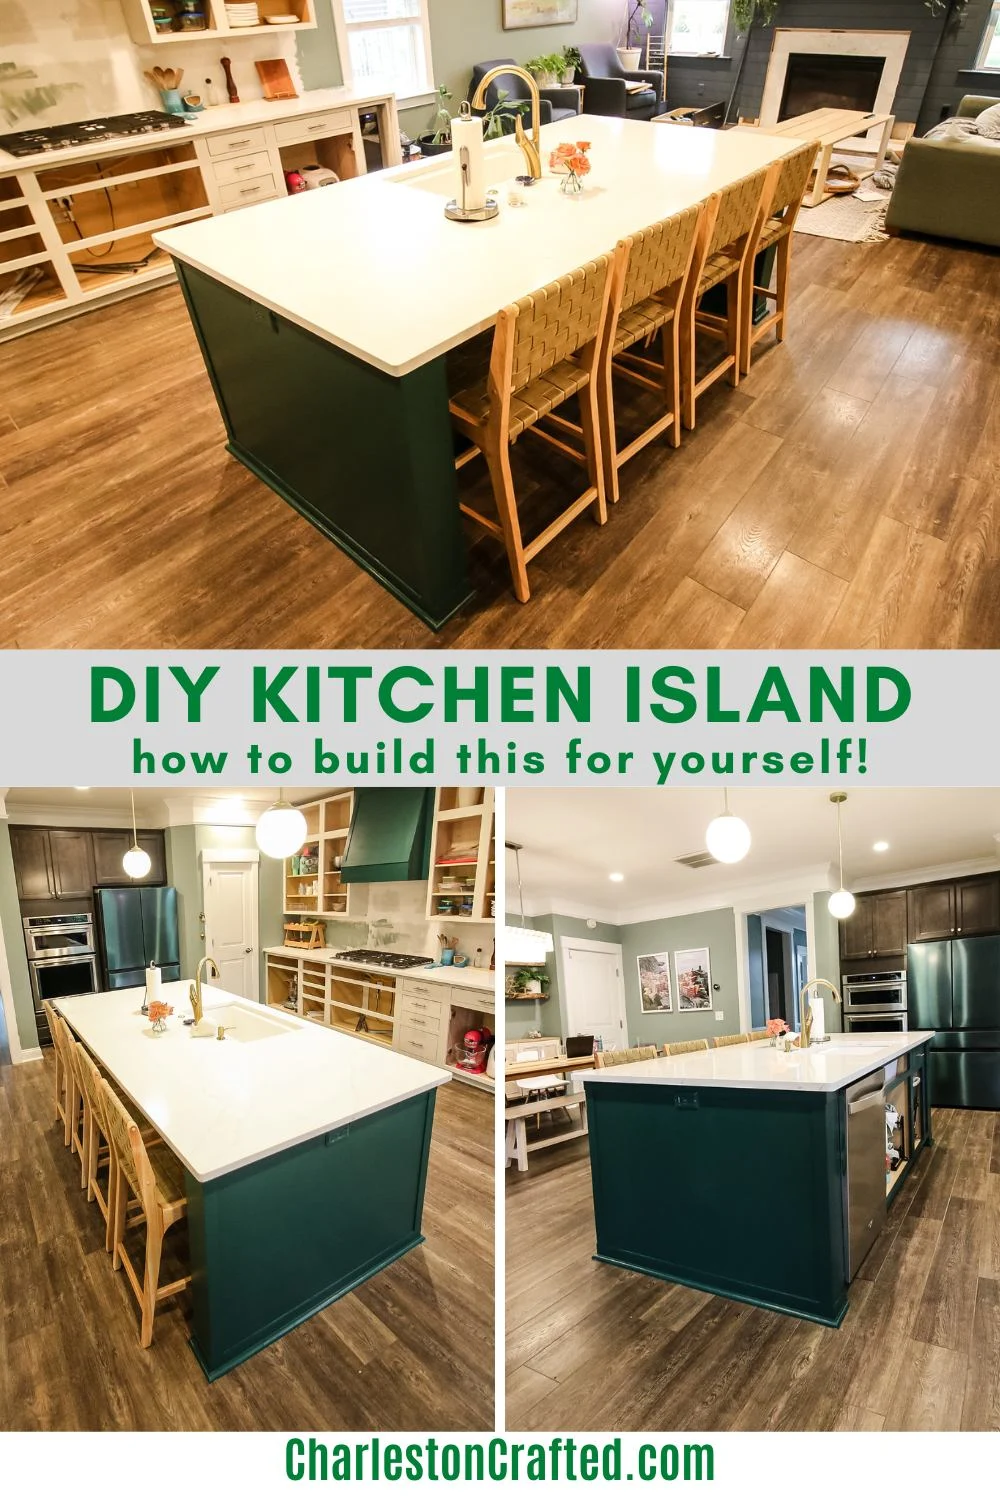 DIY kitchen island - Charleston Crafted